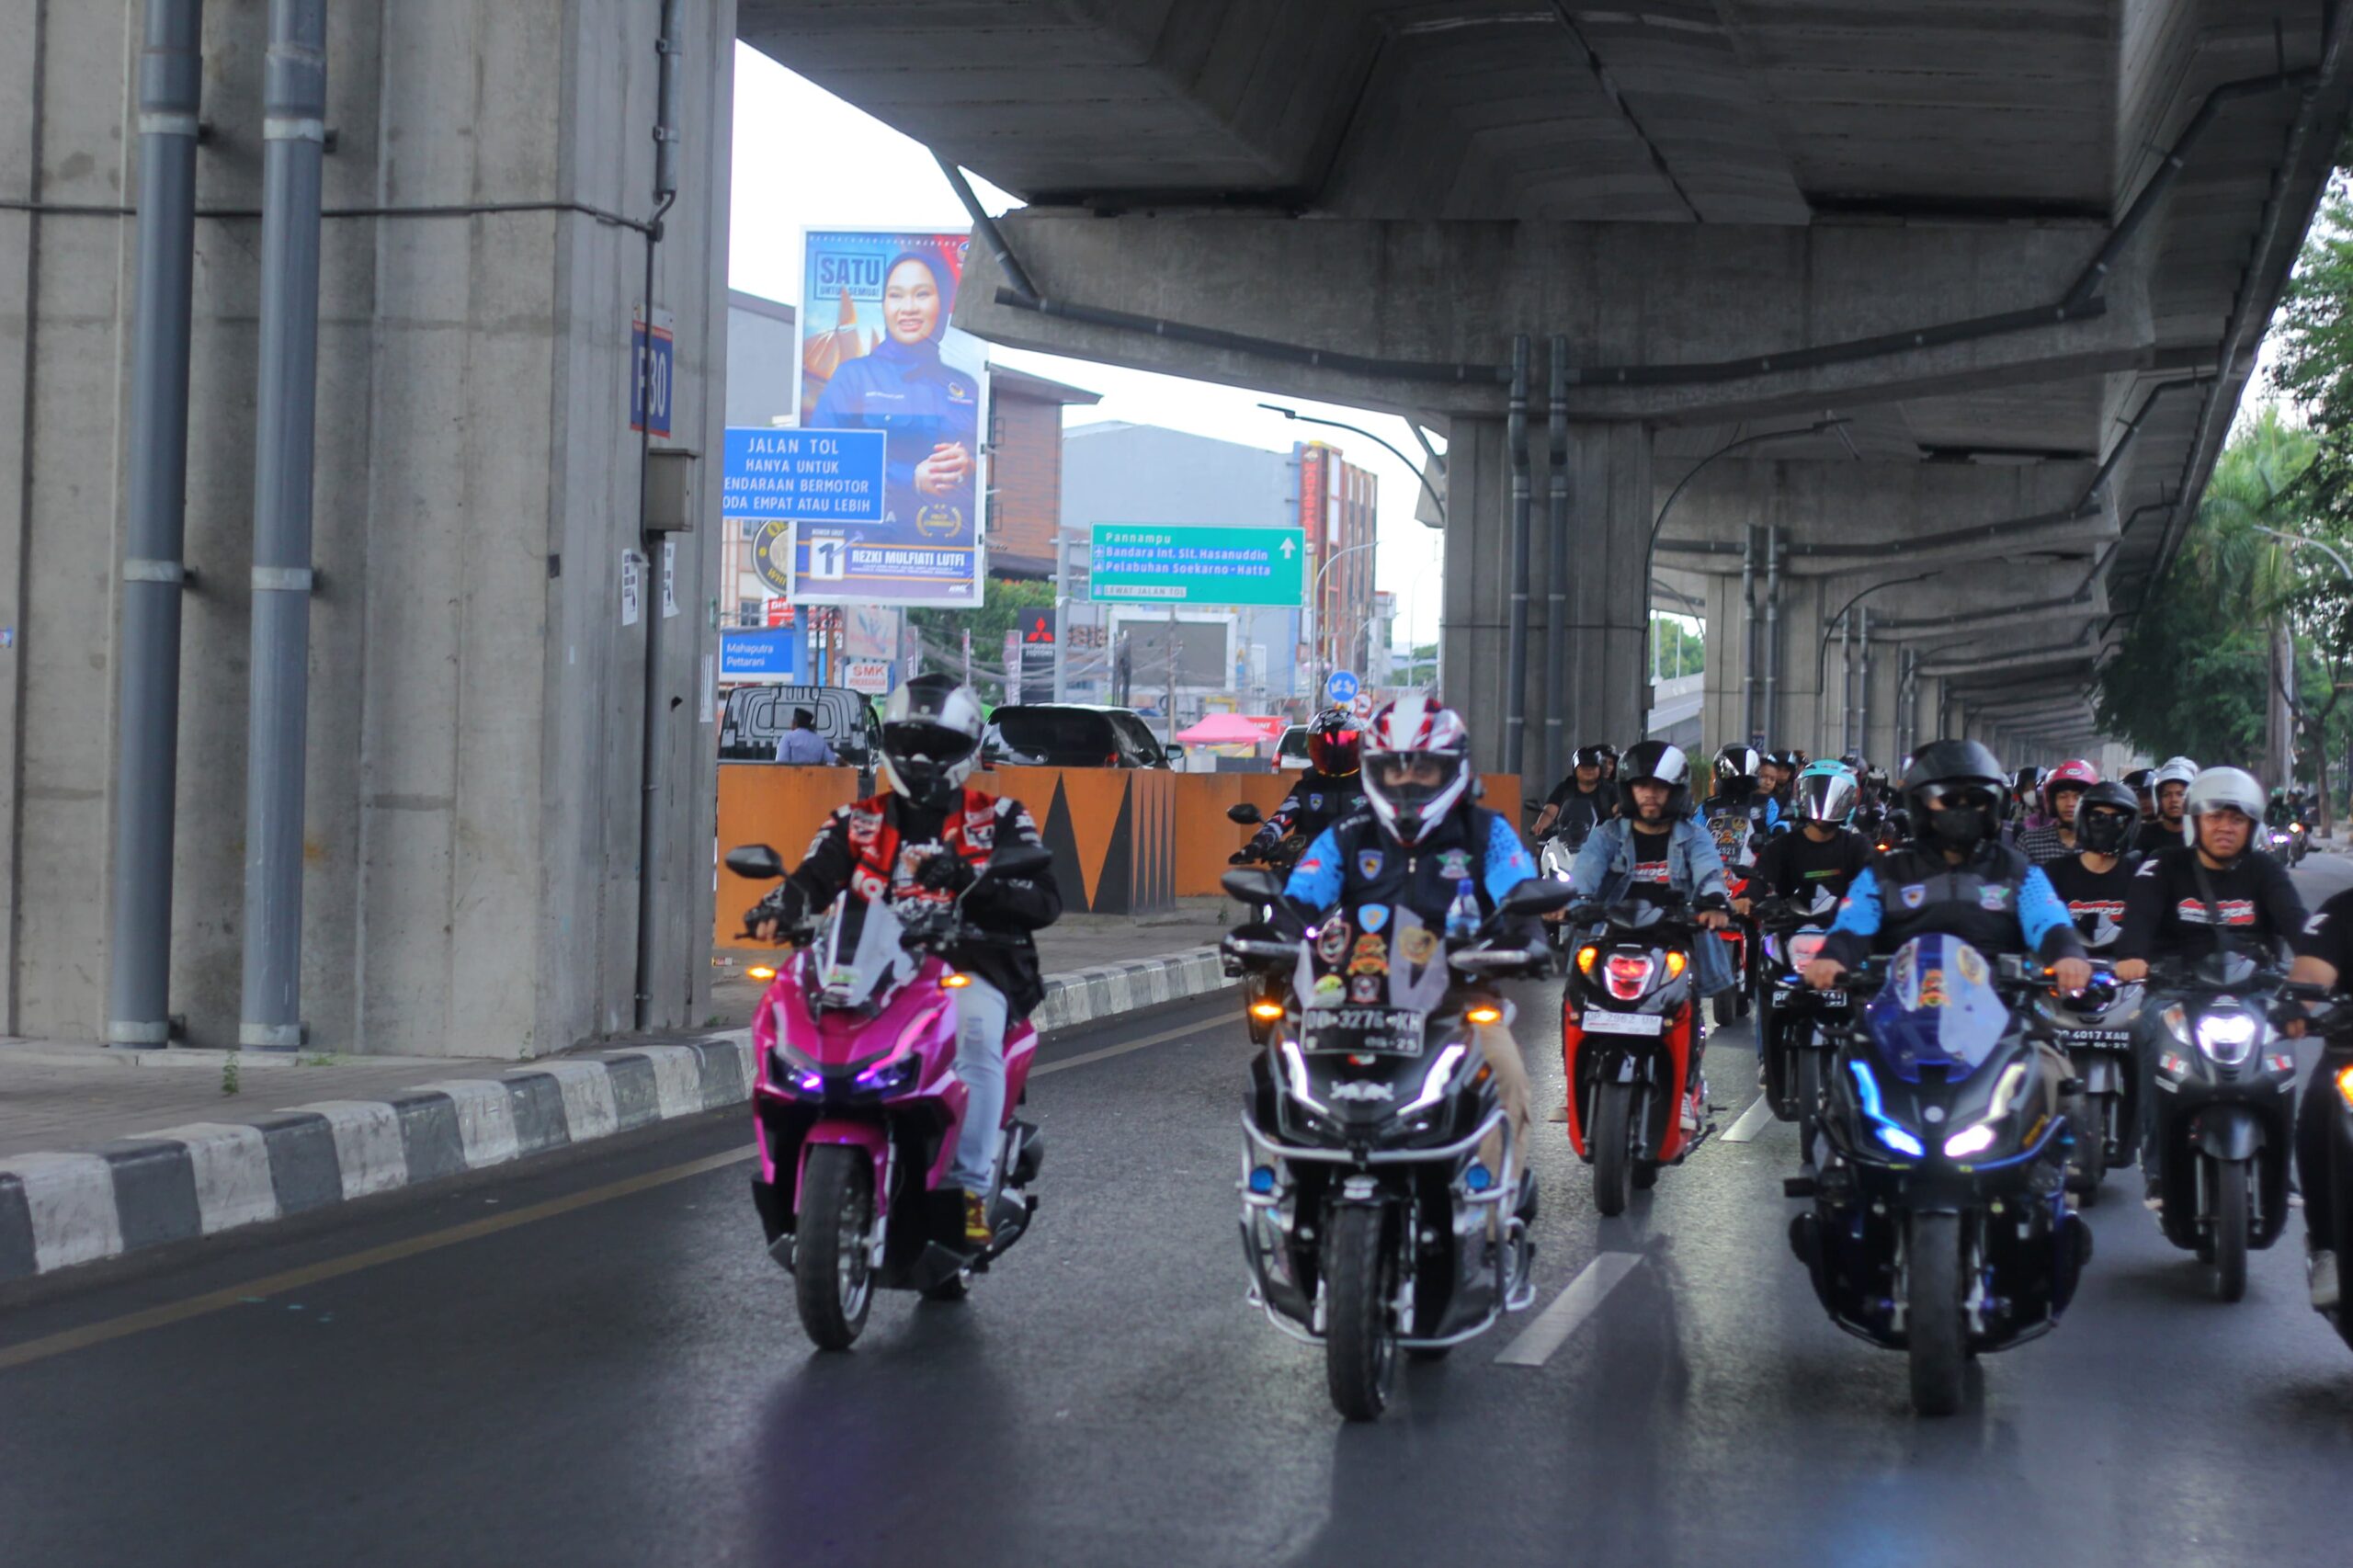 Asmo Sulsel Ajak 1.000 Konsumen Meriahkan Rolling Akbar Honda Premium Matic Riders